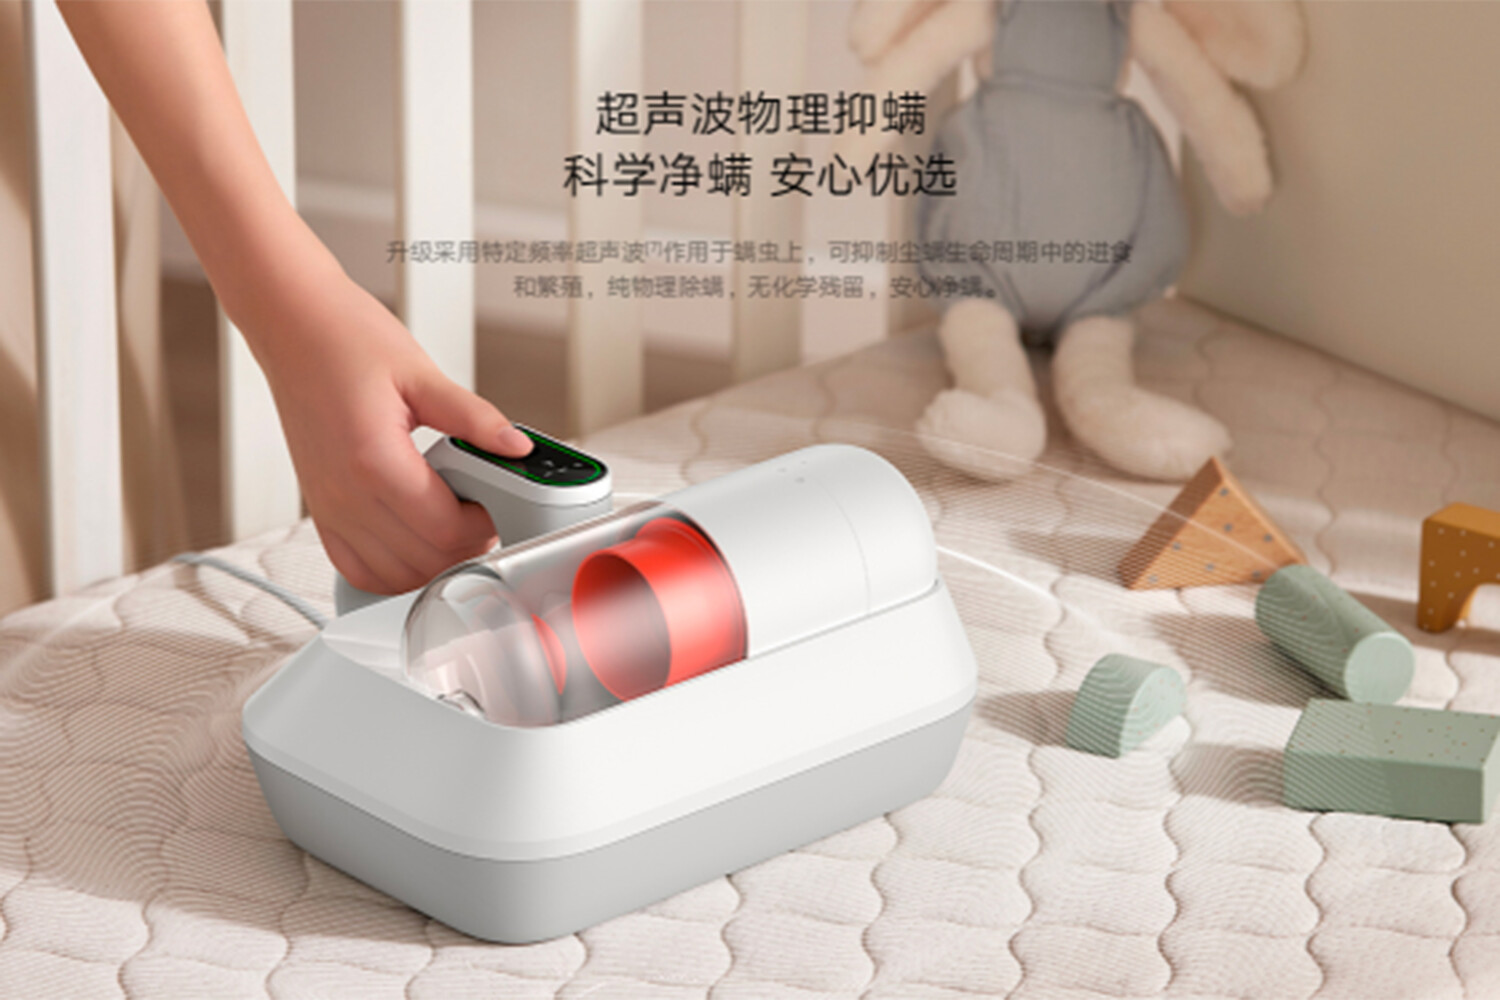 Xiaomi представила пылесос для сбора и уничтожения пылевых клещей